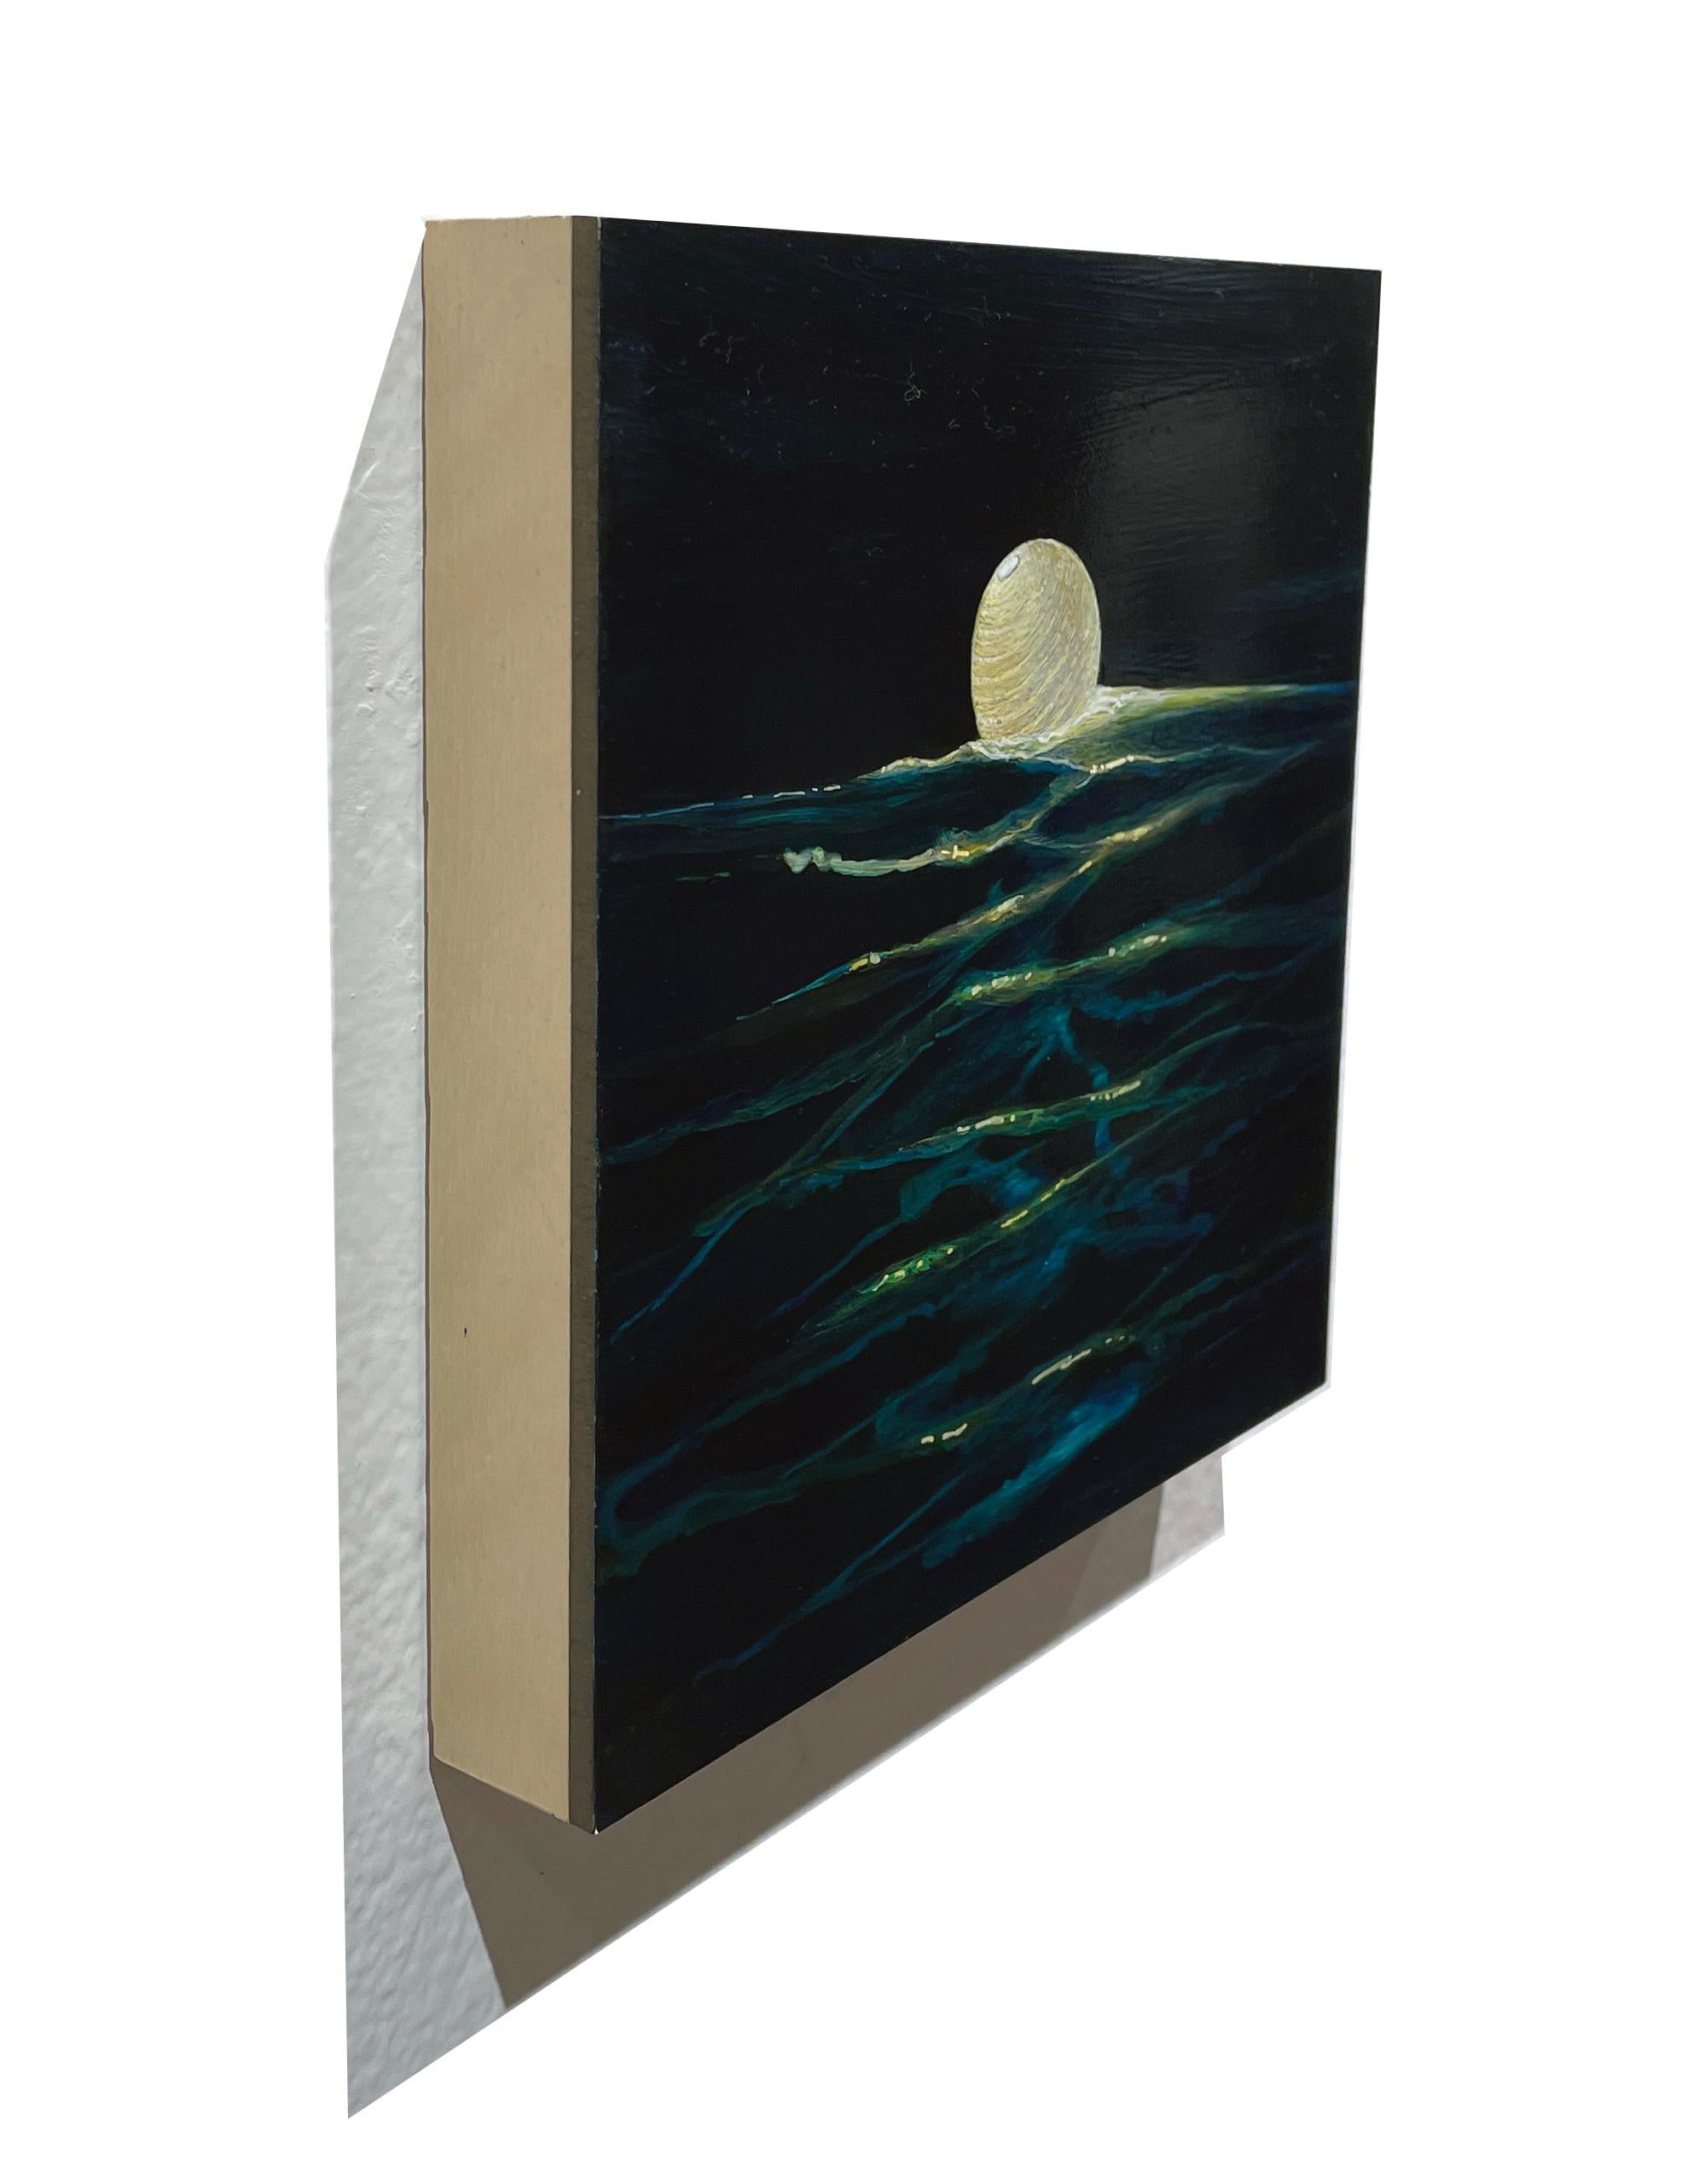 Ocean Current - Beleuchtete Papierlaterne auf tiefem Tealwasser, Acryl auf Tafel – Painting von Christina Haglid